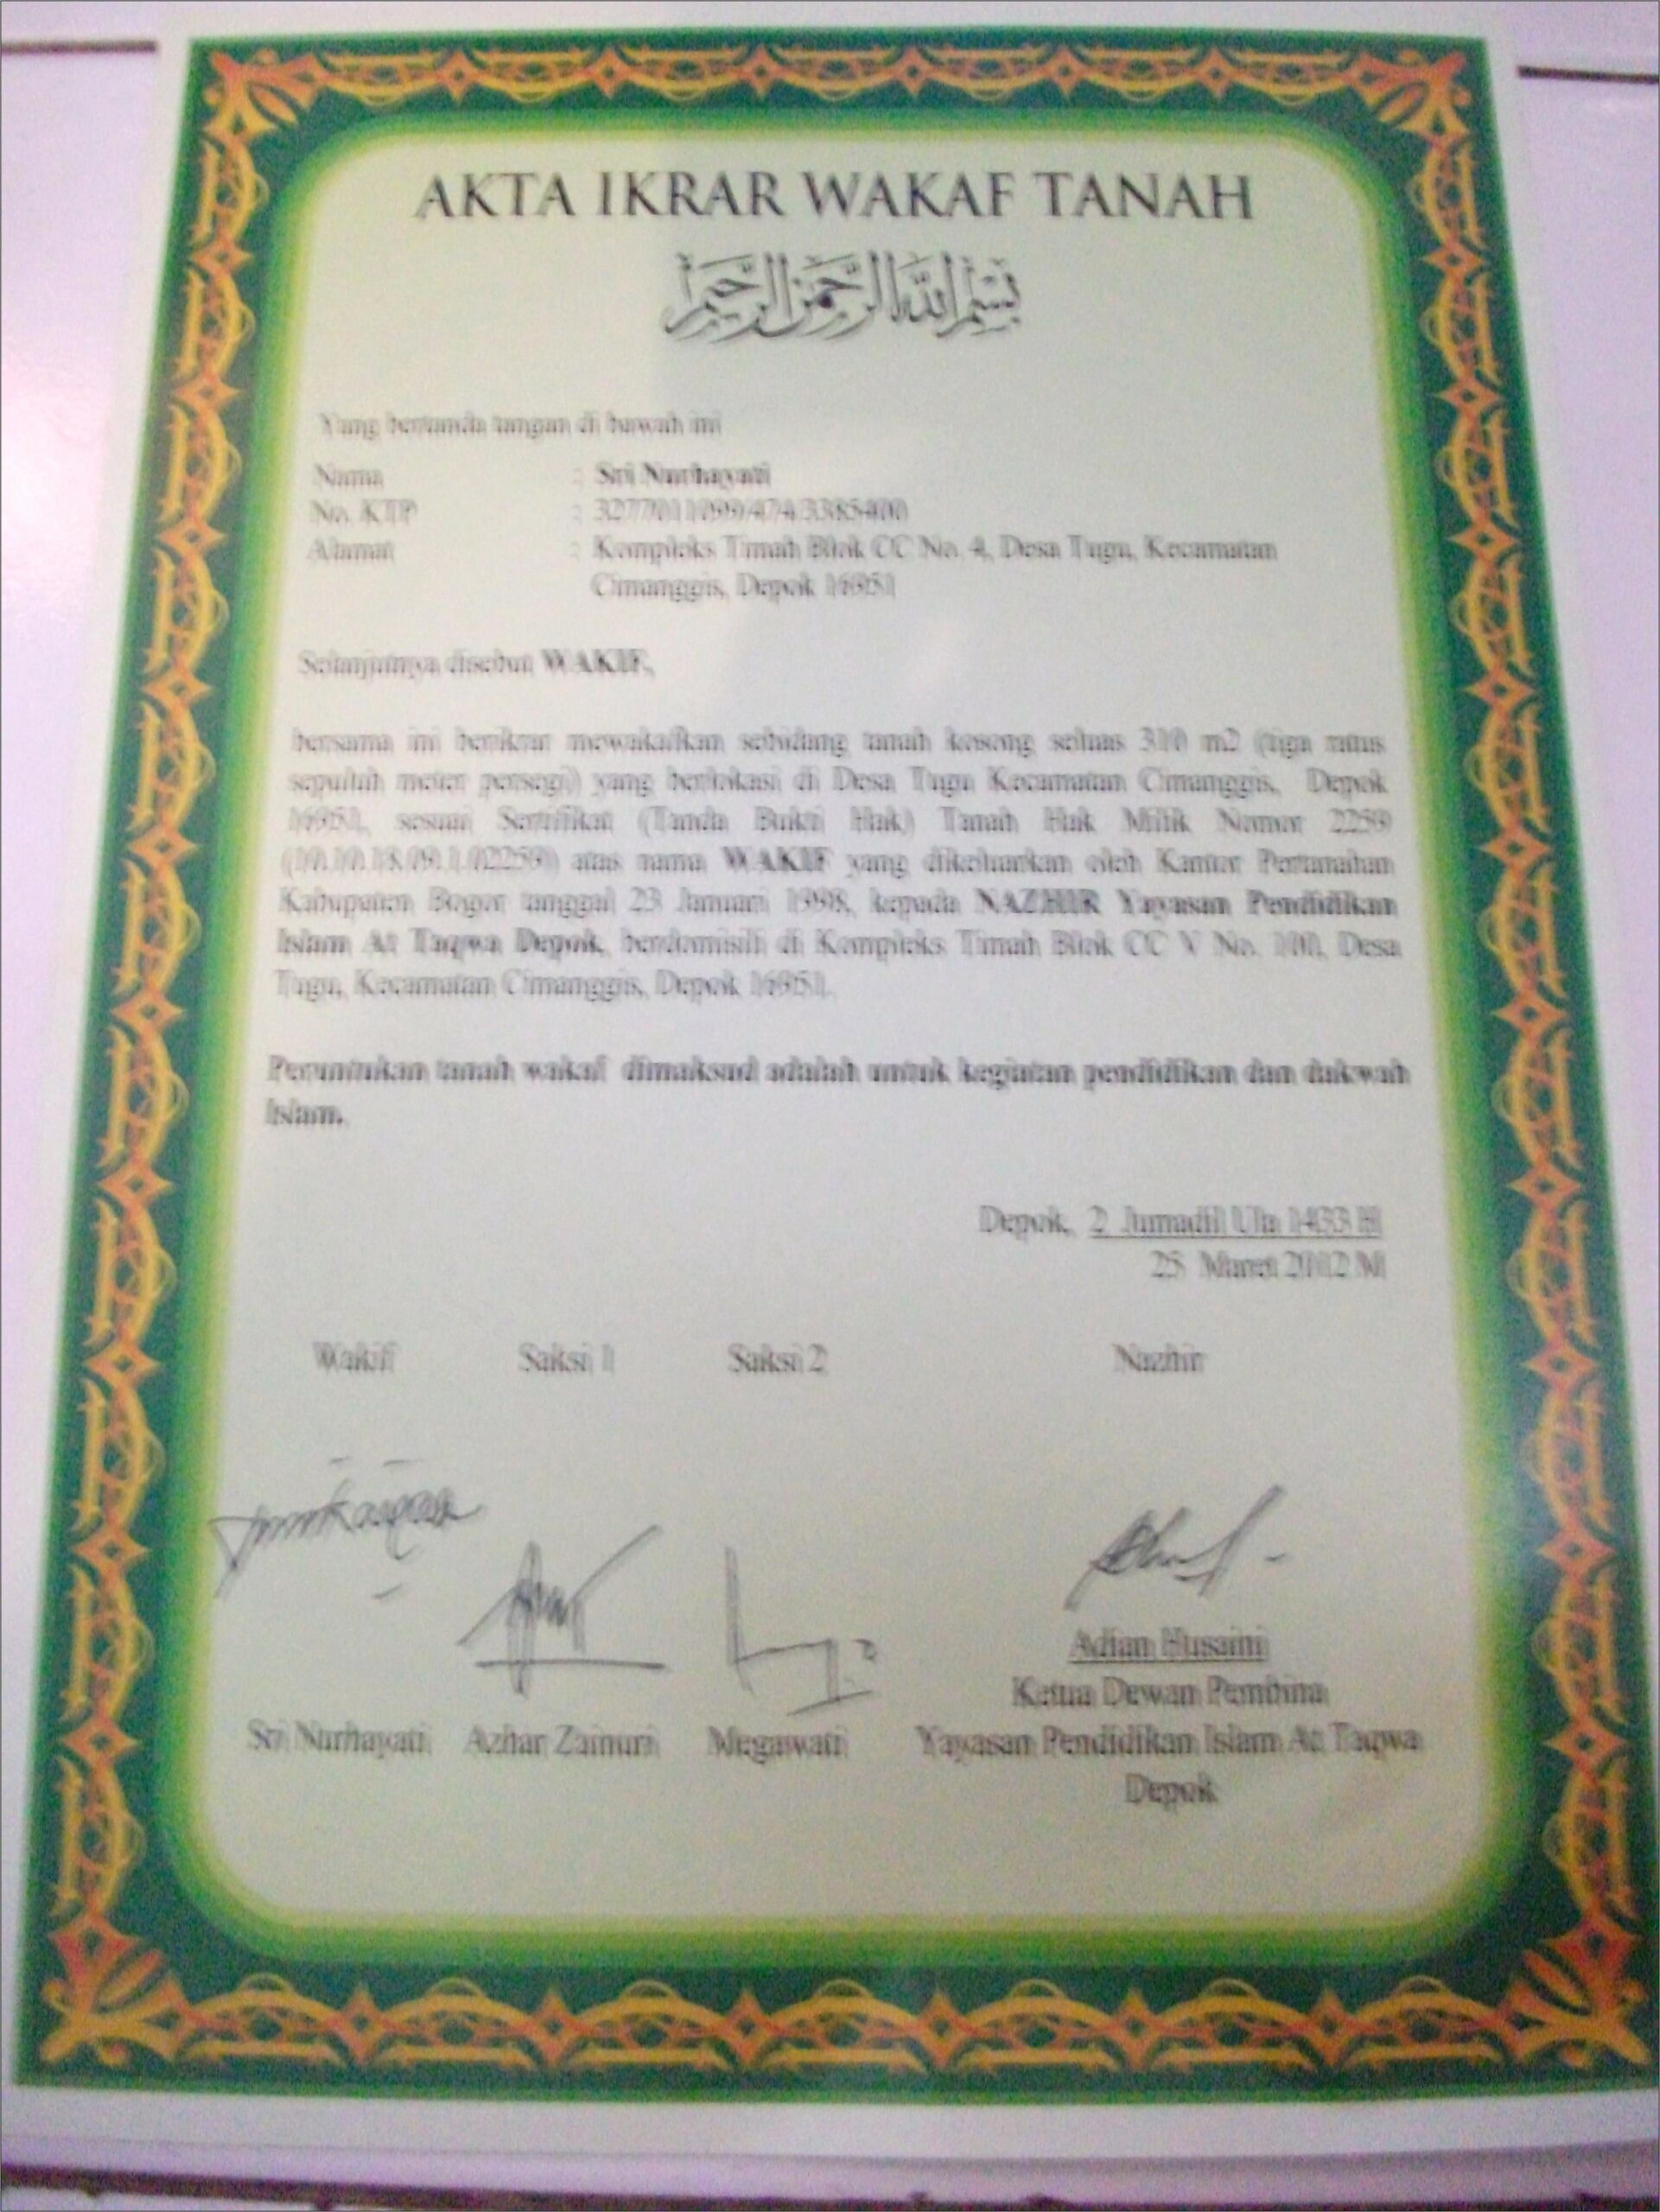 Contoh Surat Pernyataan Wakaf Tanah Masjid